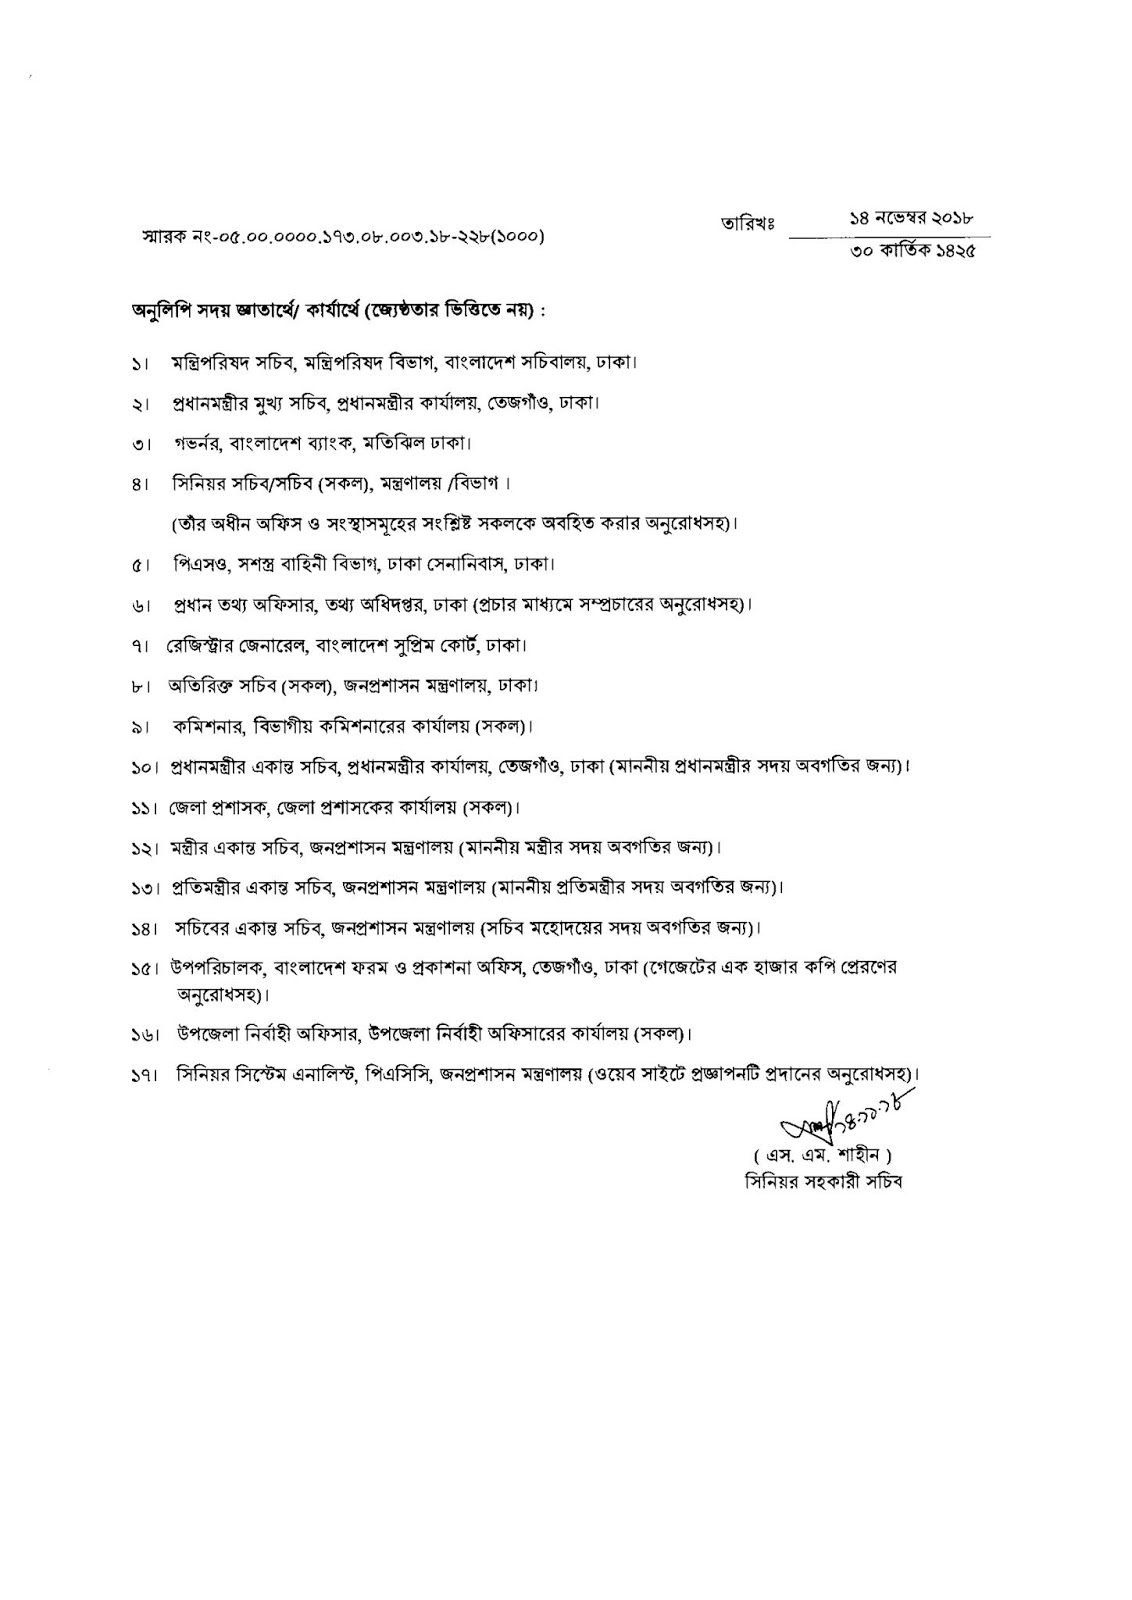 Bangladesh Government Holidays List 2019 